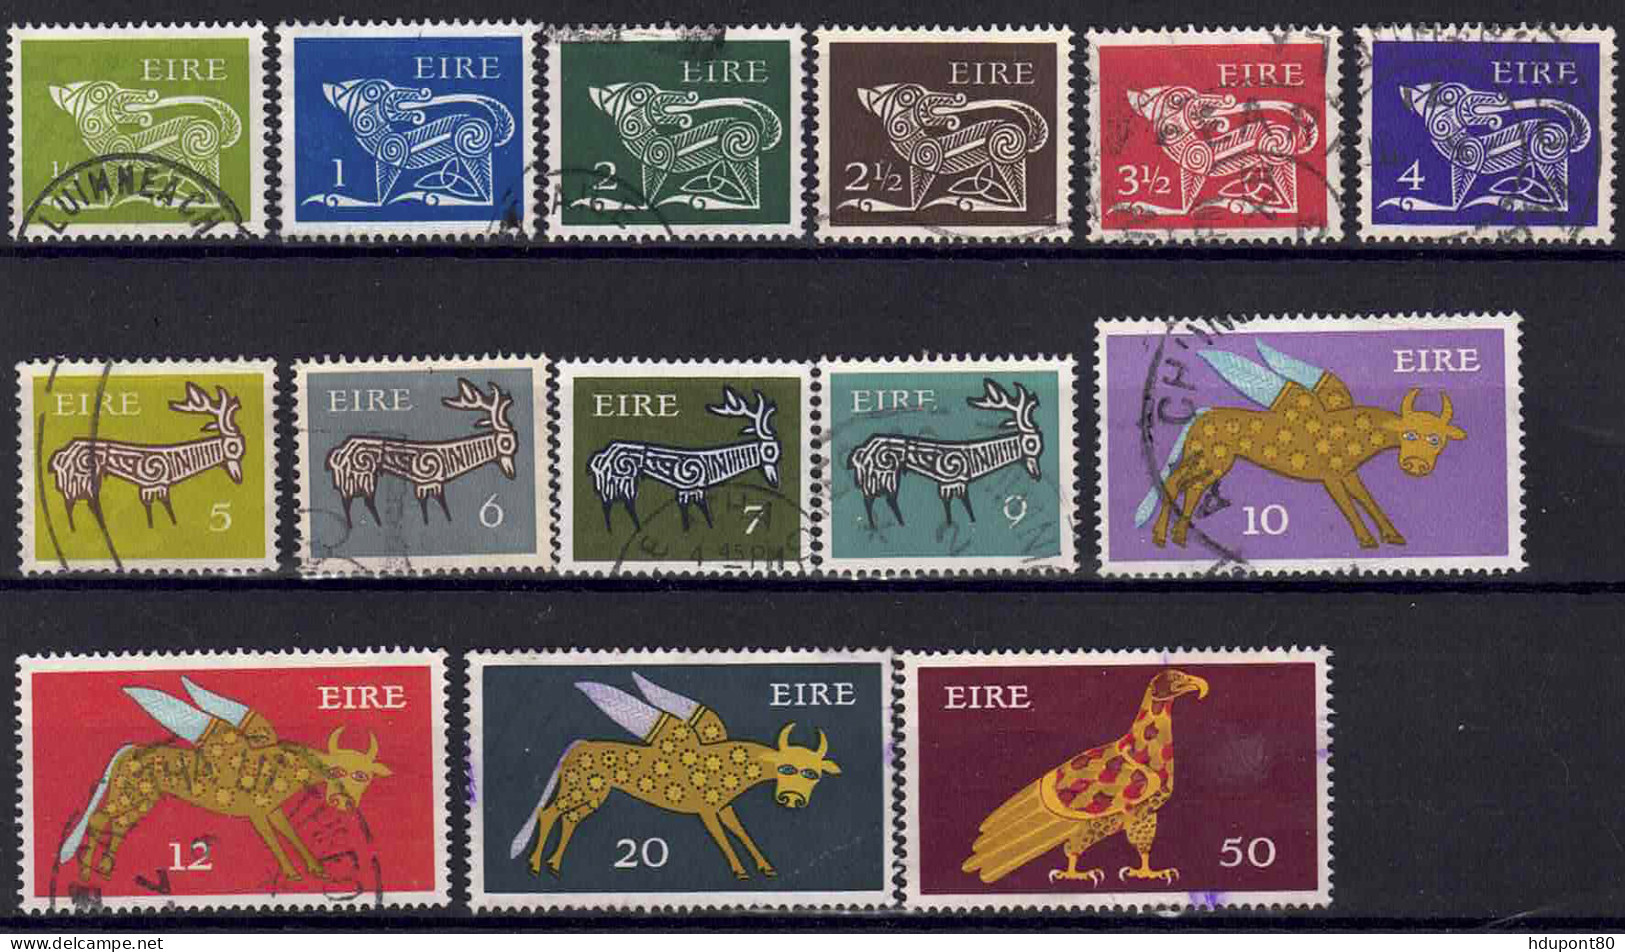 YT  252, 253, 255, 256, 258 à 261, 264 à 266 - Used Stamps